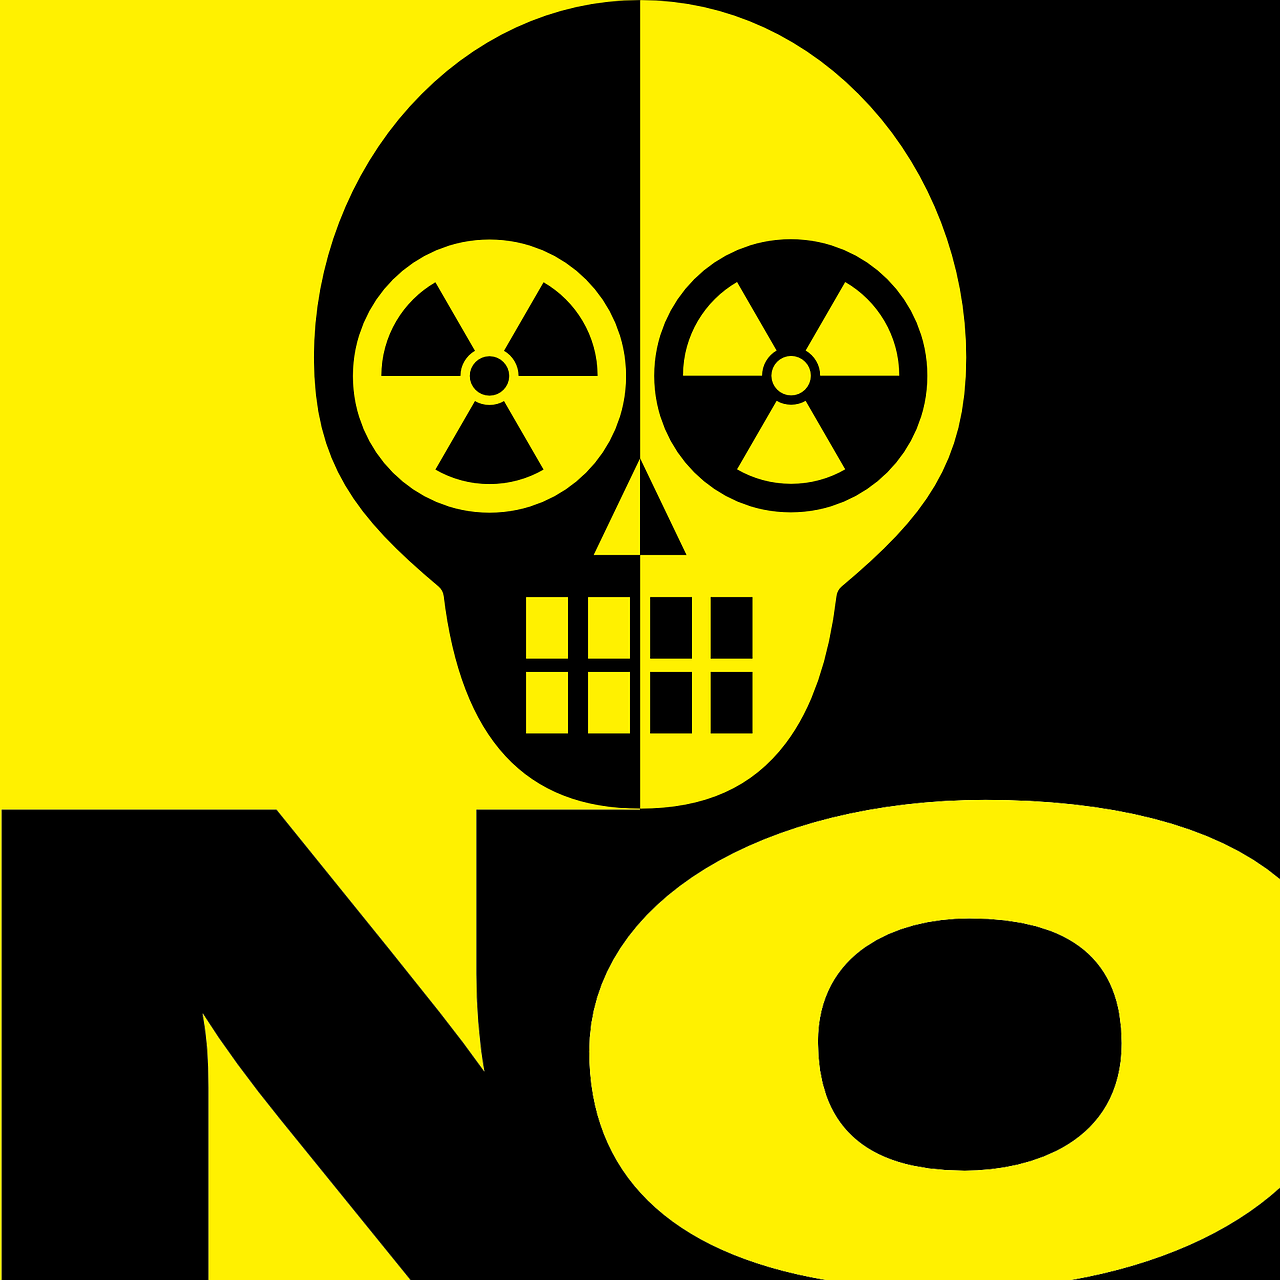  "radioactive-pixabay.png"